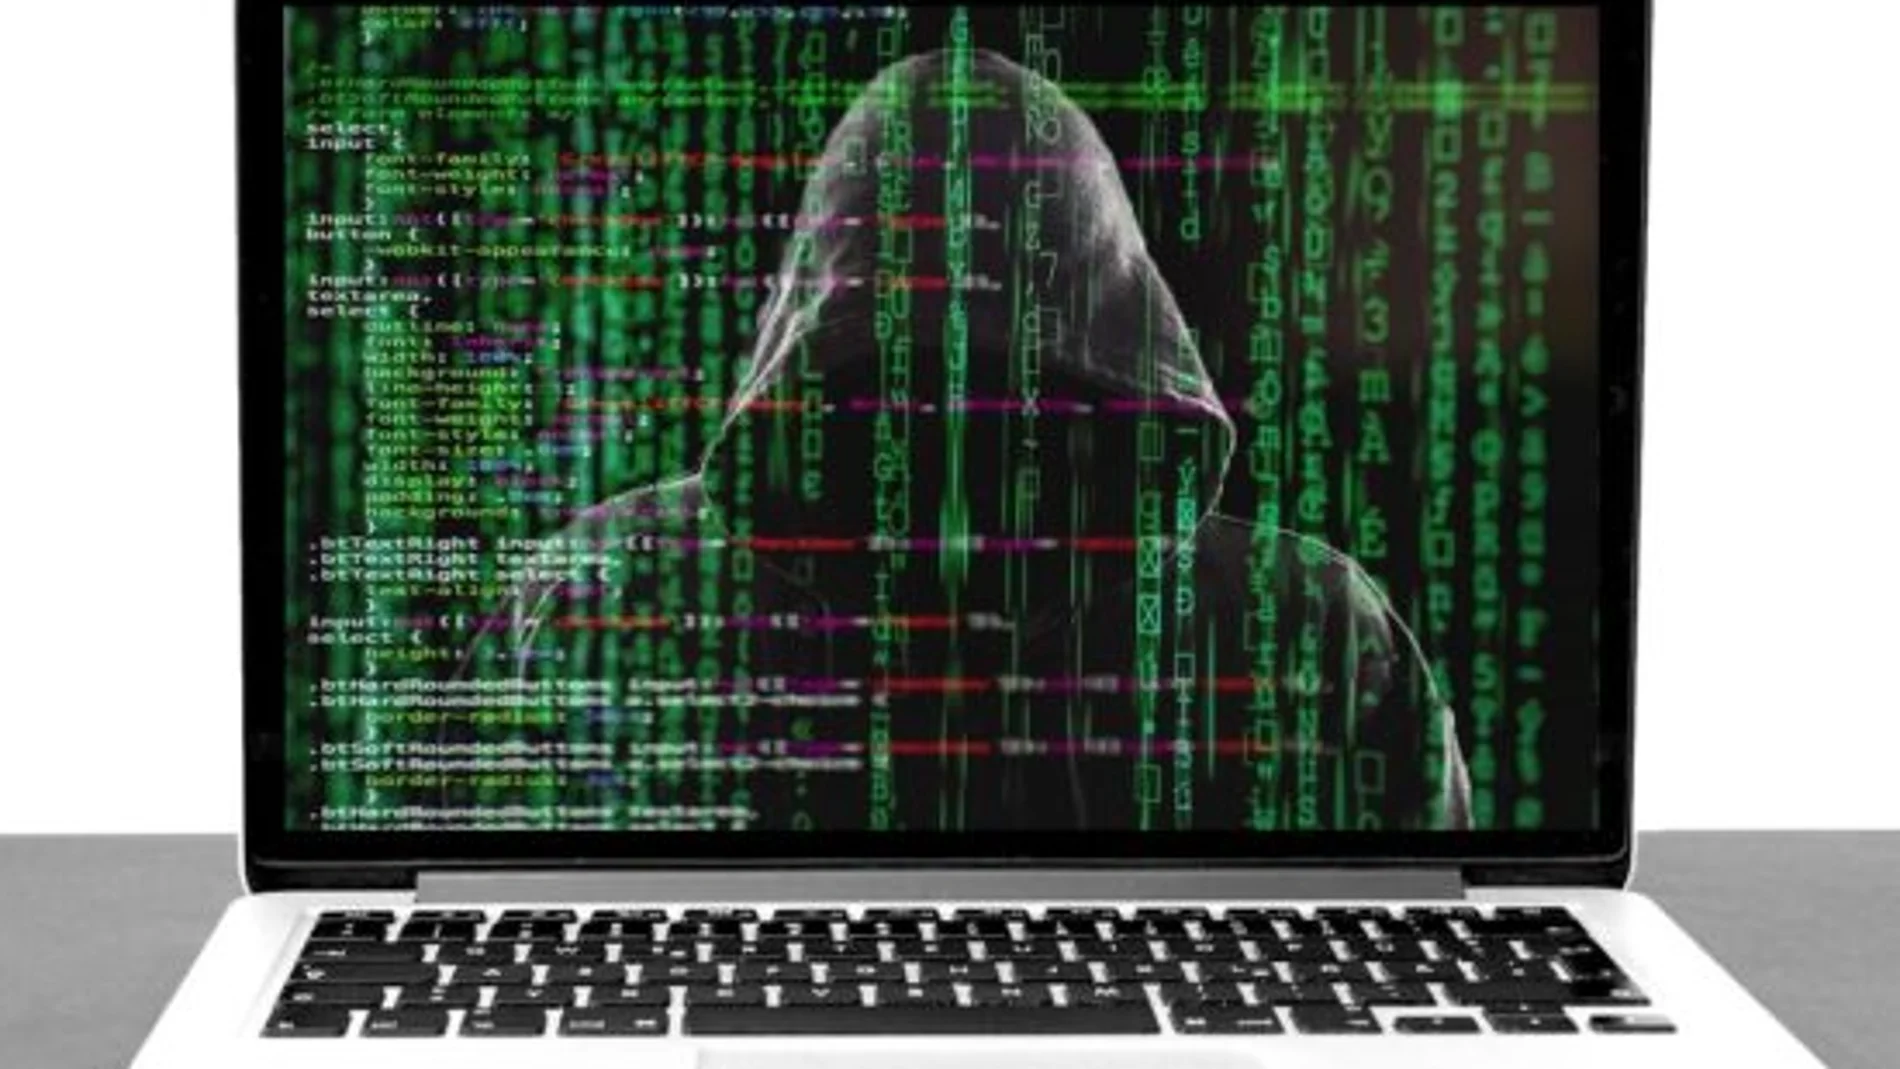 Un empleado transfiere 25,6 millones a estafadores tras ser engañado con una videollamada grupal deepfake.